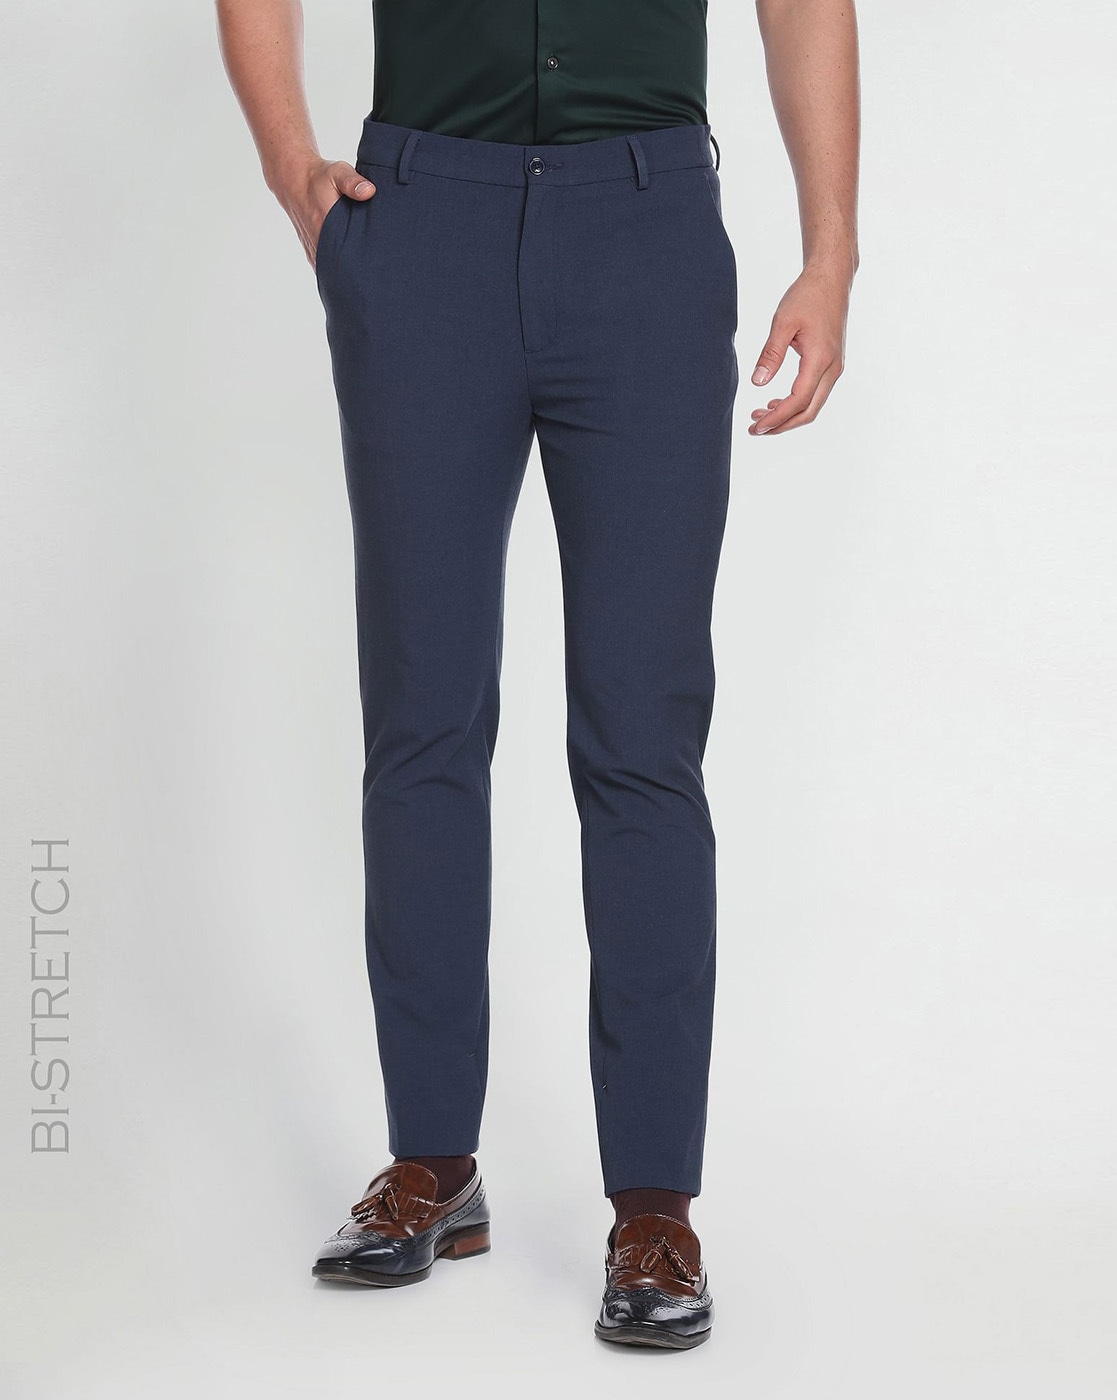 Buy Blue Trousers  Pants for Men by Arrow Newyork Online  Ajiocom